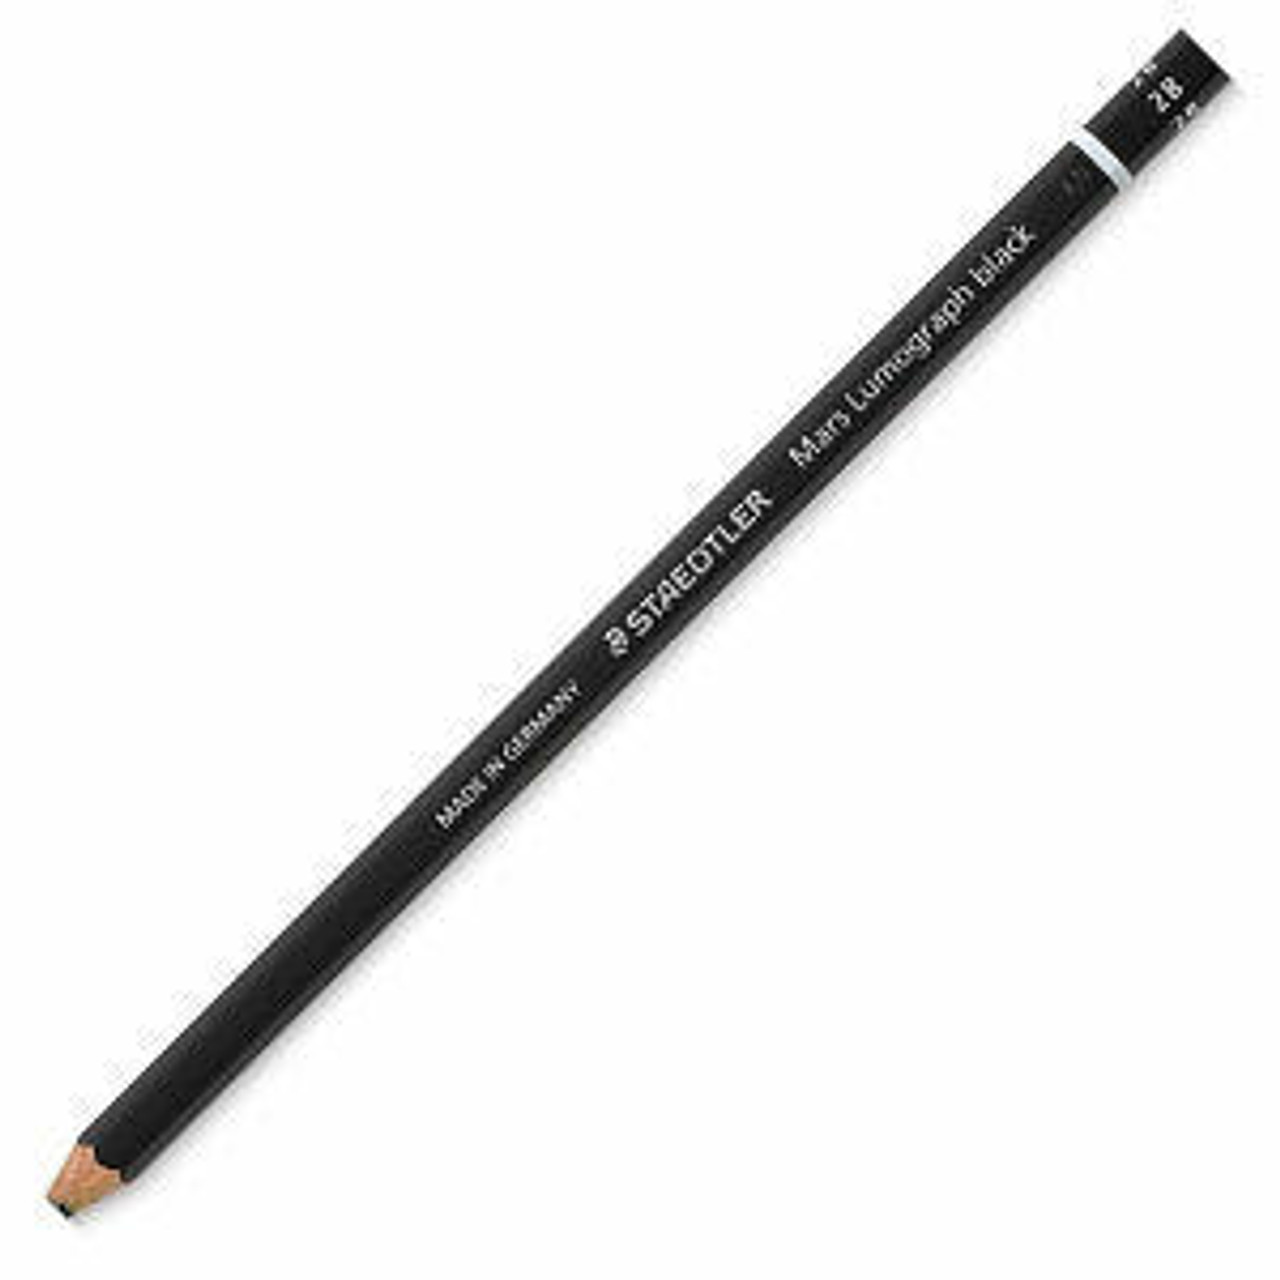 Staedtler Lumograph Pencils 2B [Pack of 12]